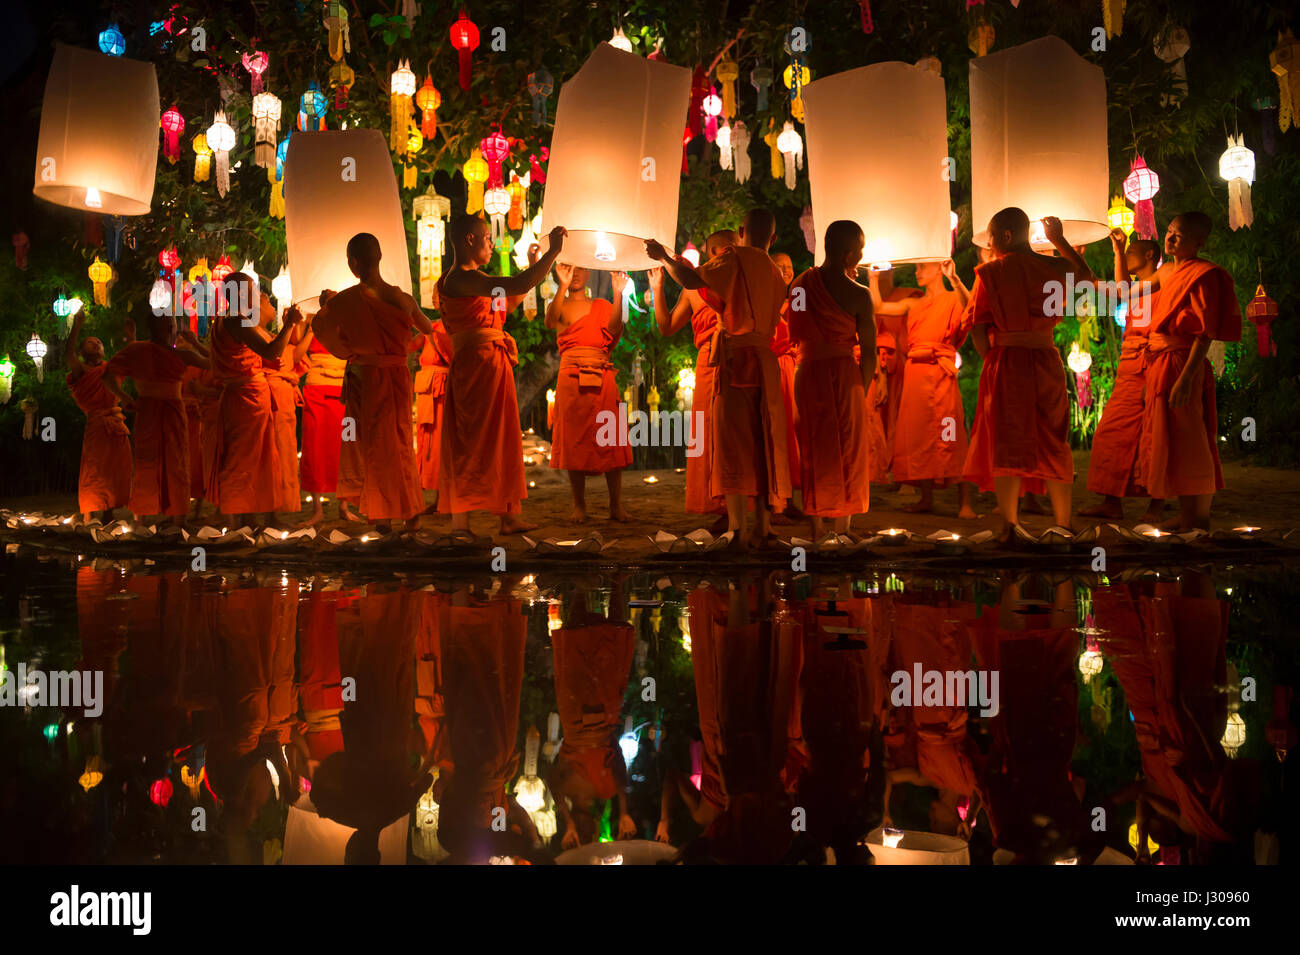 CHIANG MAI, Tailandia - Noviembre 7, 2014: Los Jóvenes monjes budistas en túnicas naranja cielo lanzamiento linternas a la Yi Peng festival anual. Foto de stock